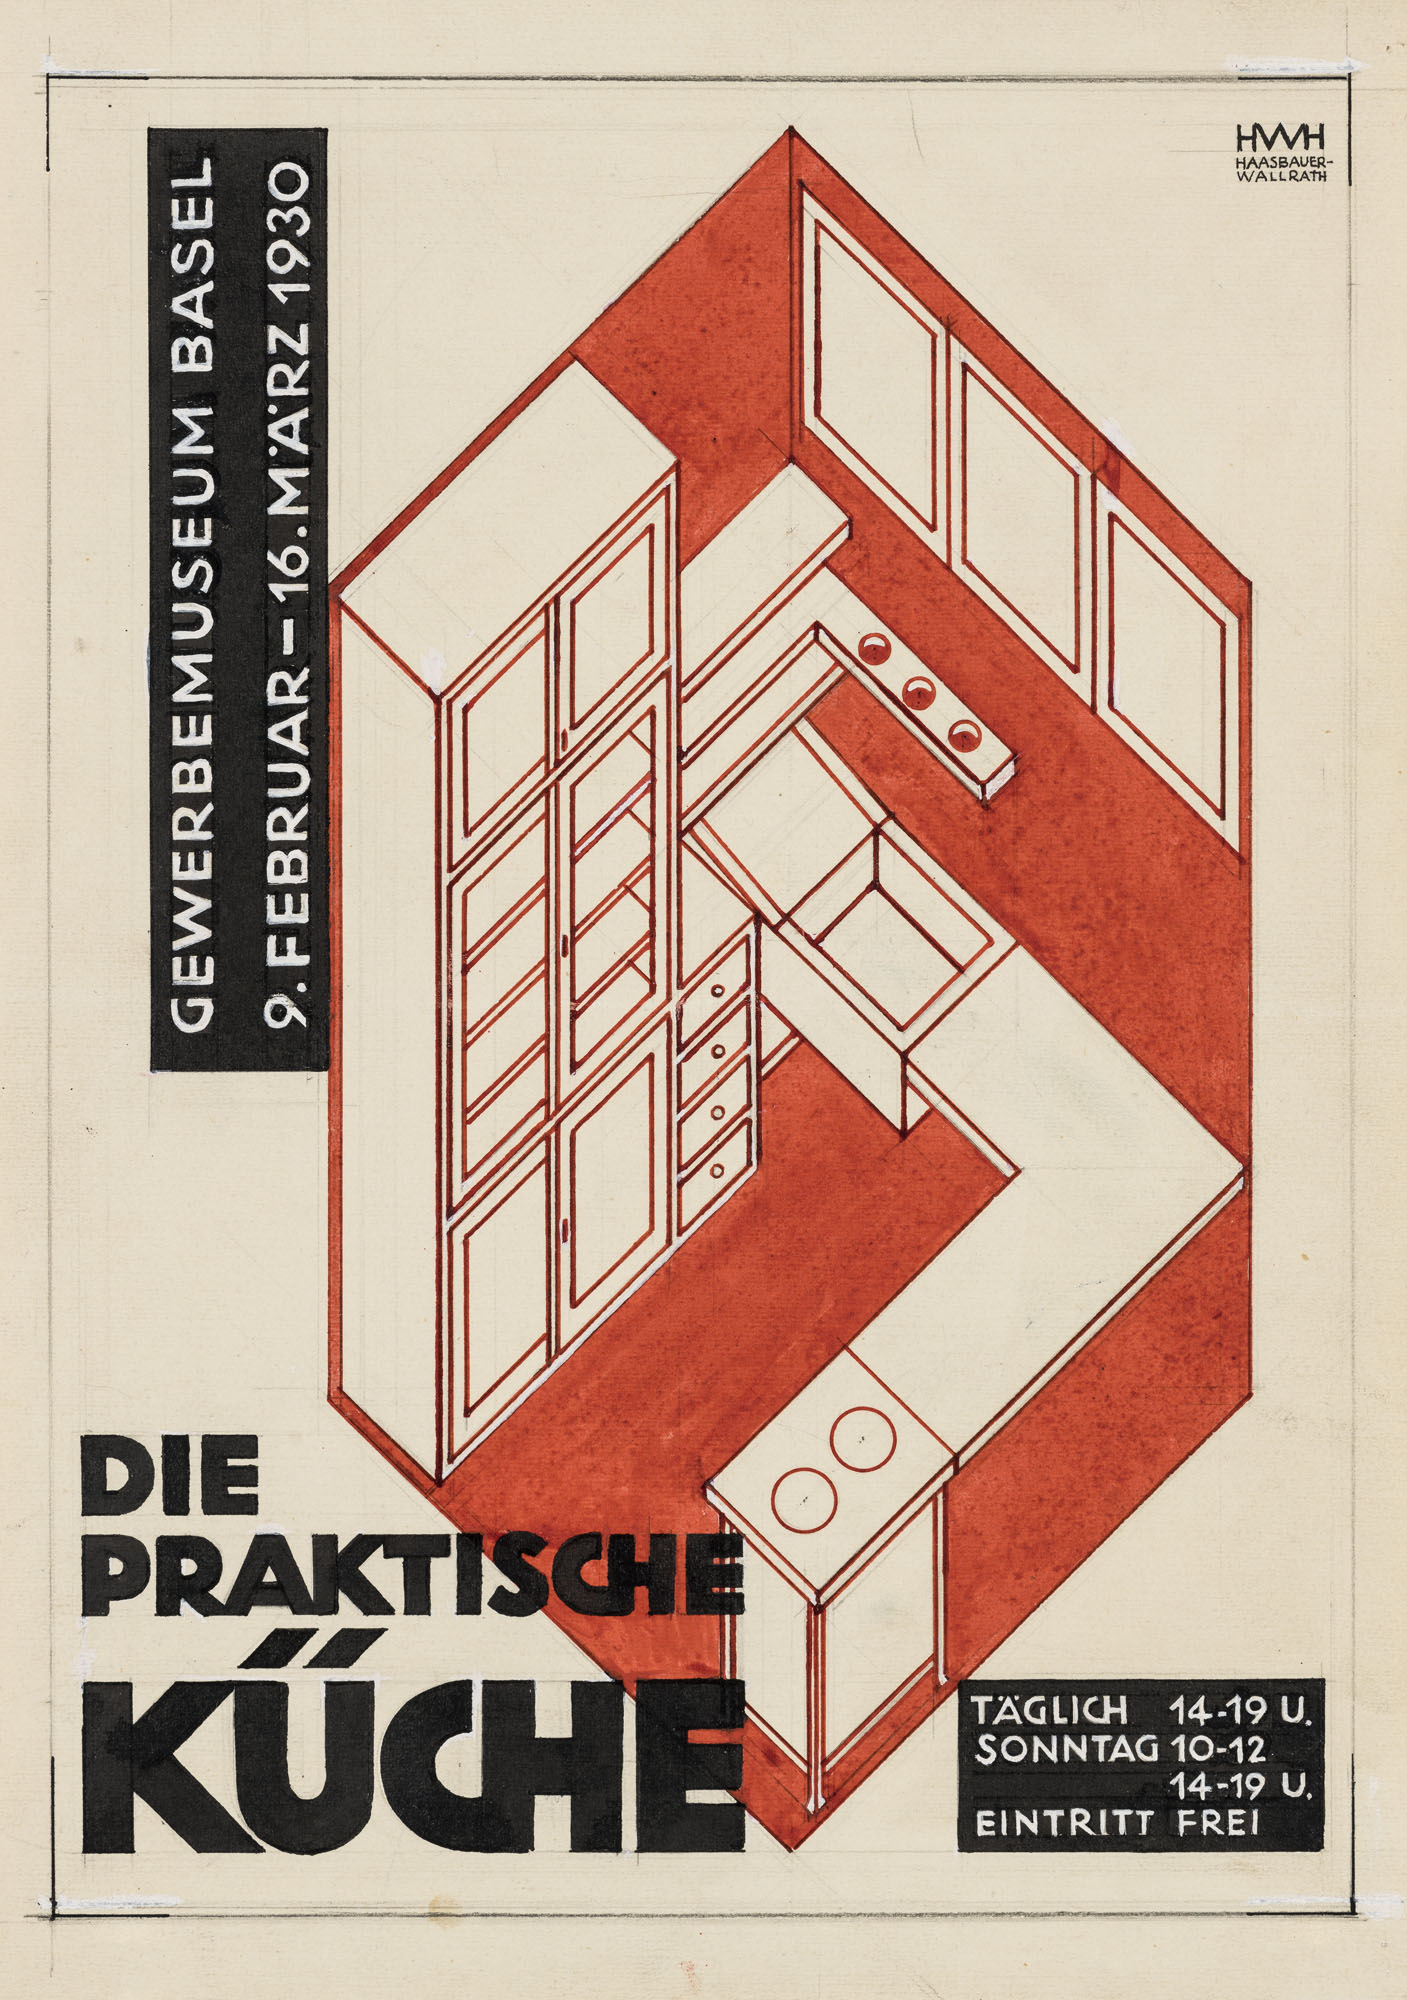 Die praktische Küche Helene Haasbauer-Wallrath Poster